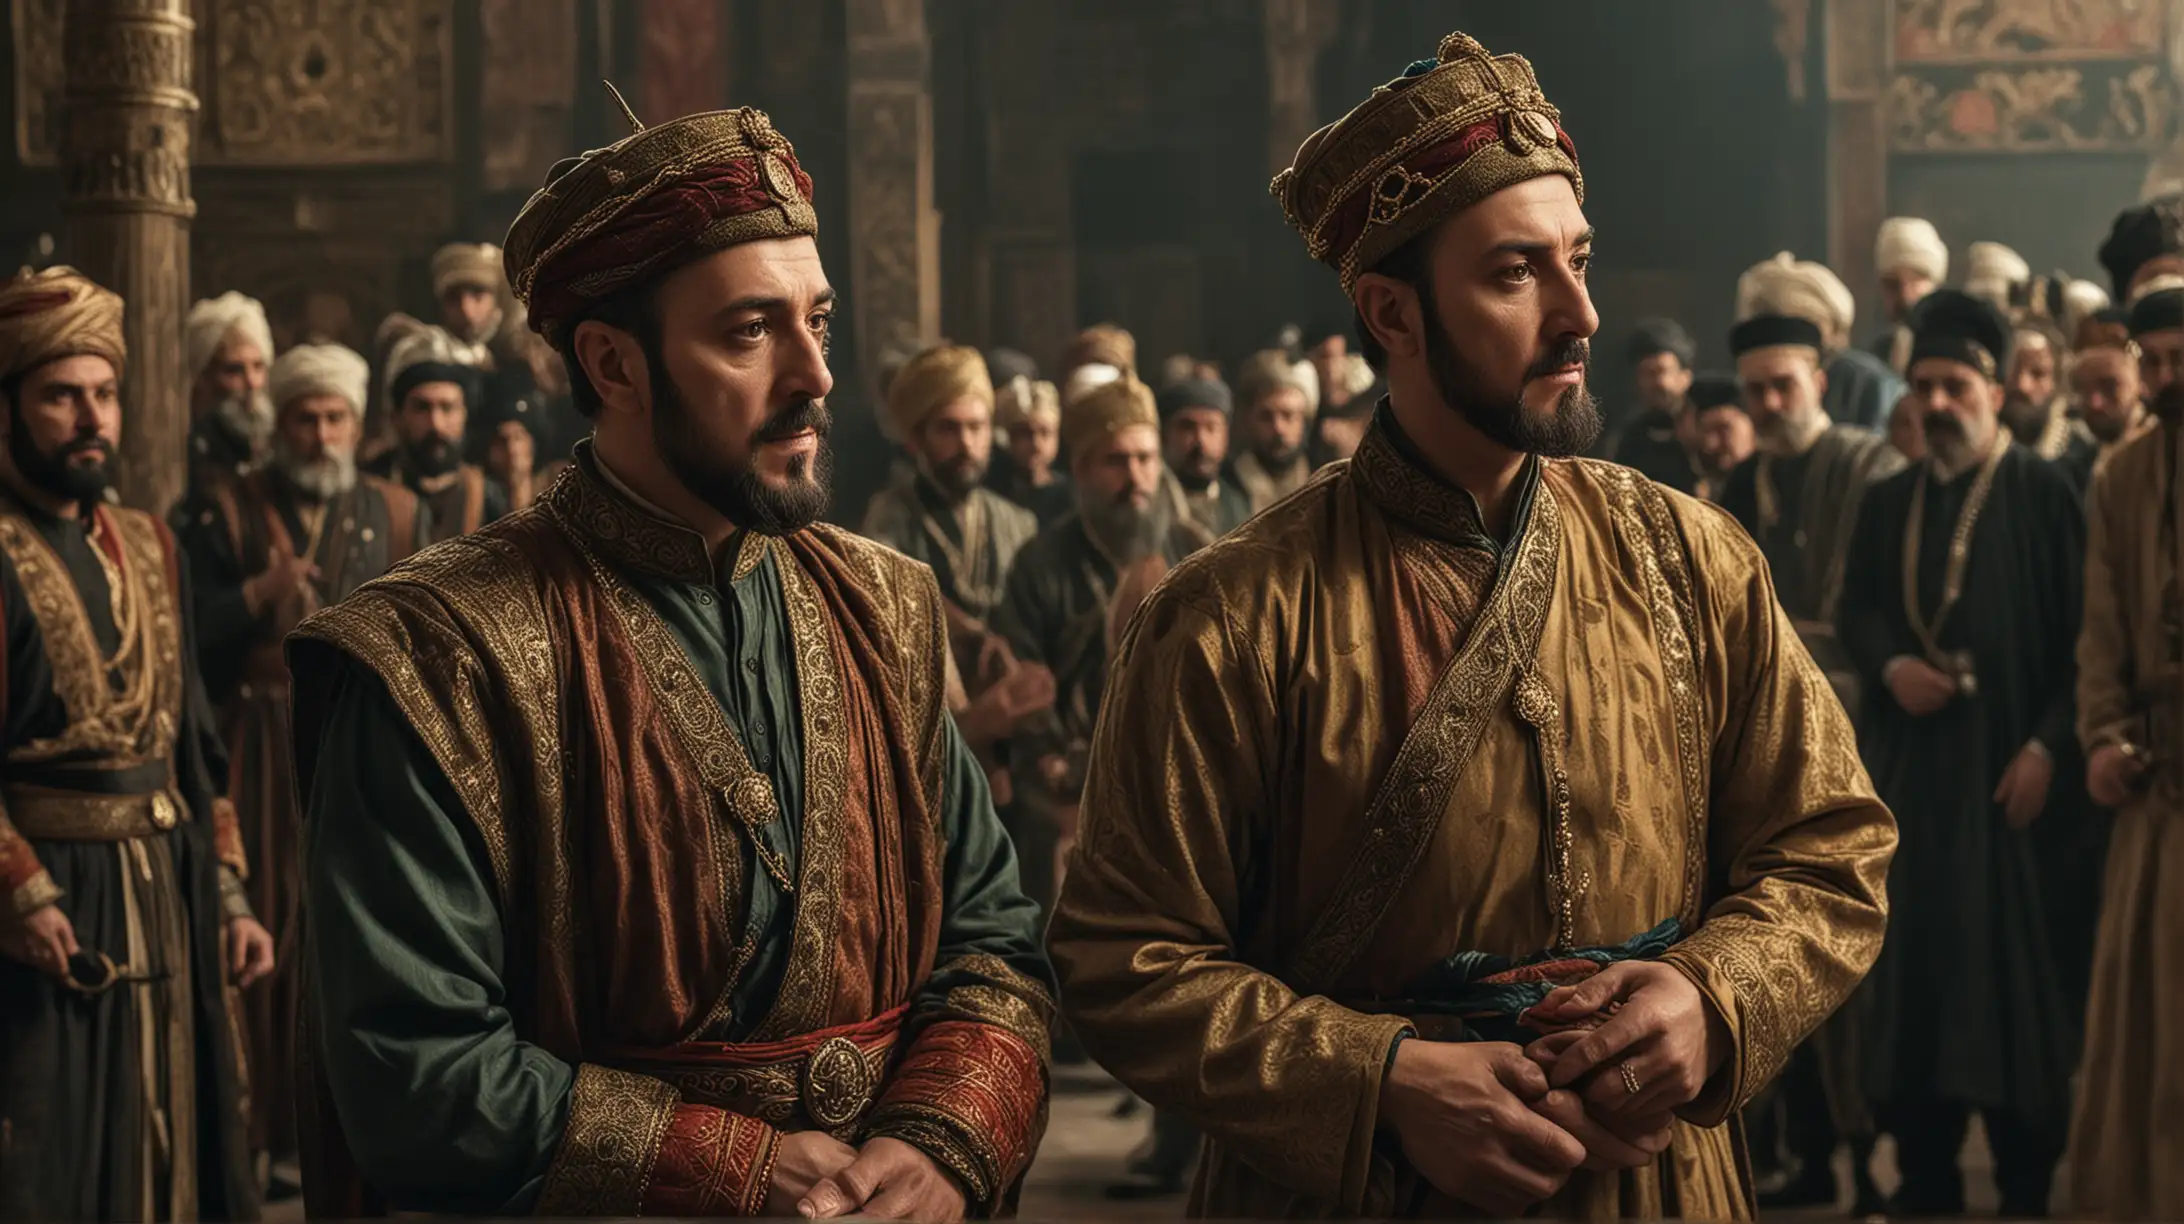 Sultan Suleiman Confronts Son Mustafa in Tense Courtroom Drama